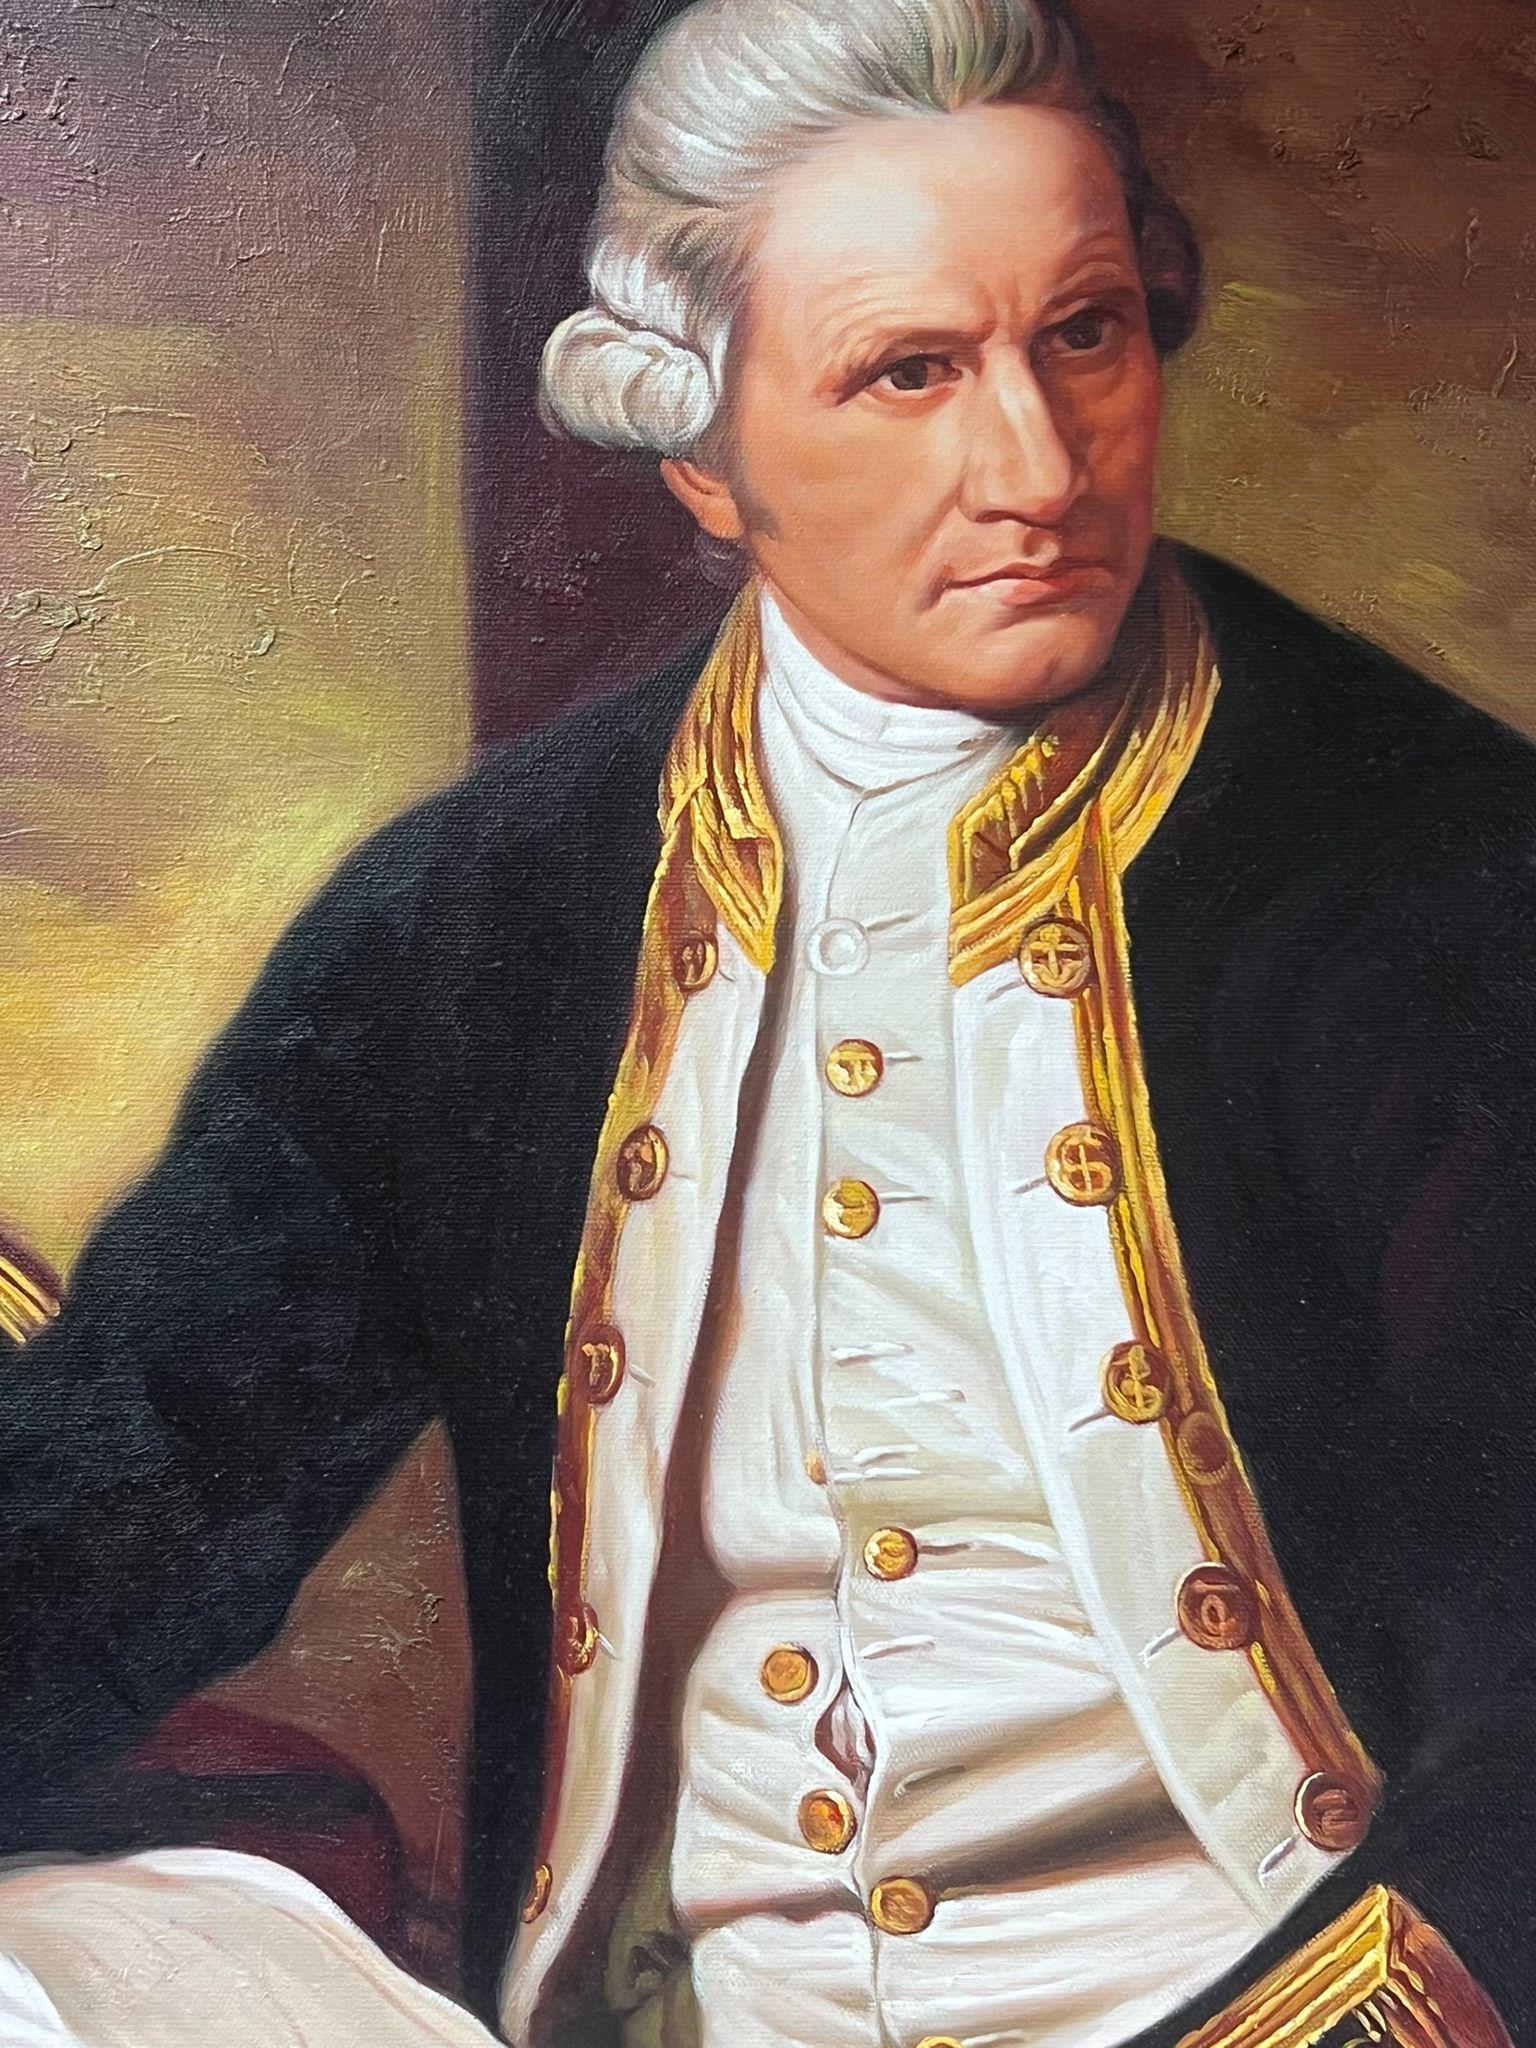 Captain James Cook Portrait Large Oil Painting on Canvas For Sale 5